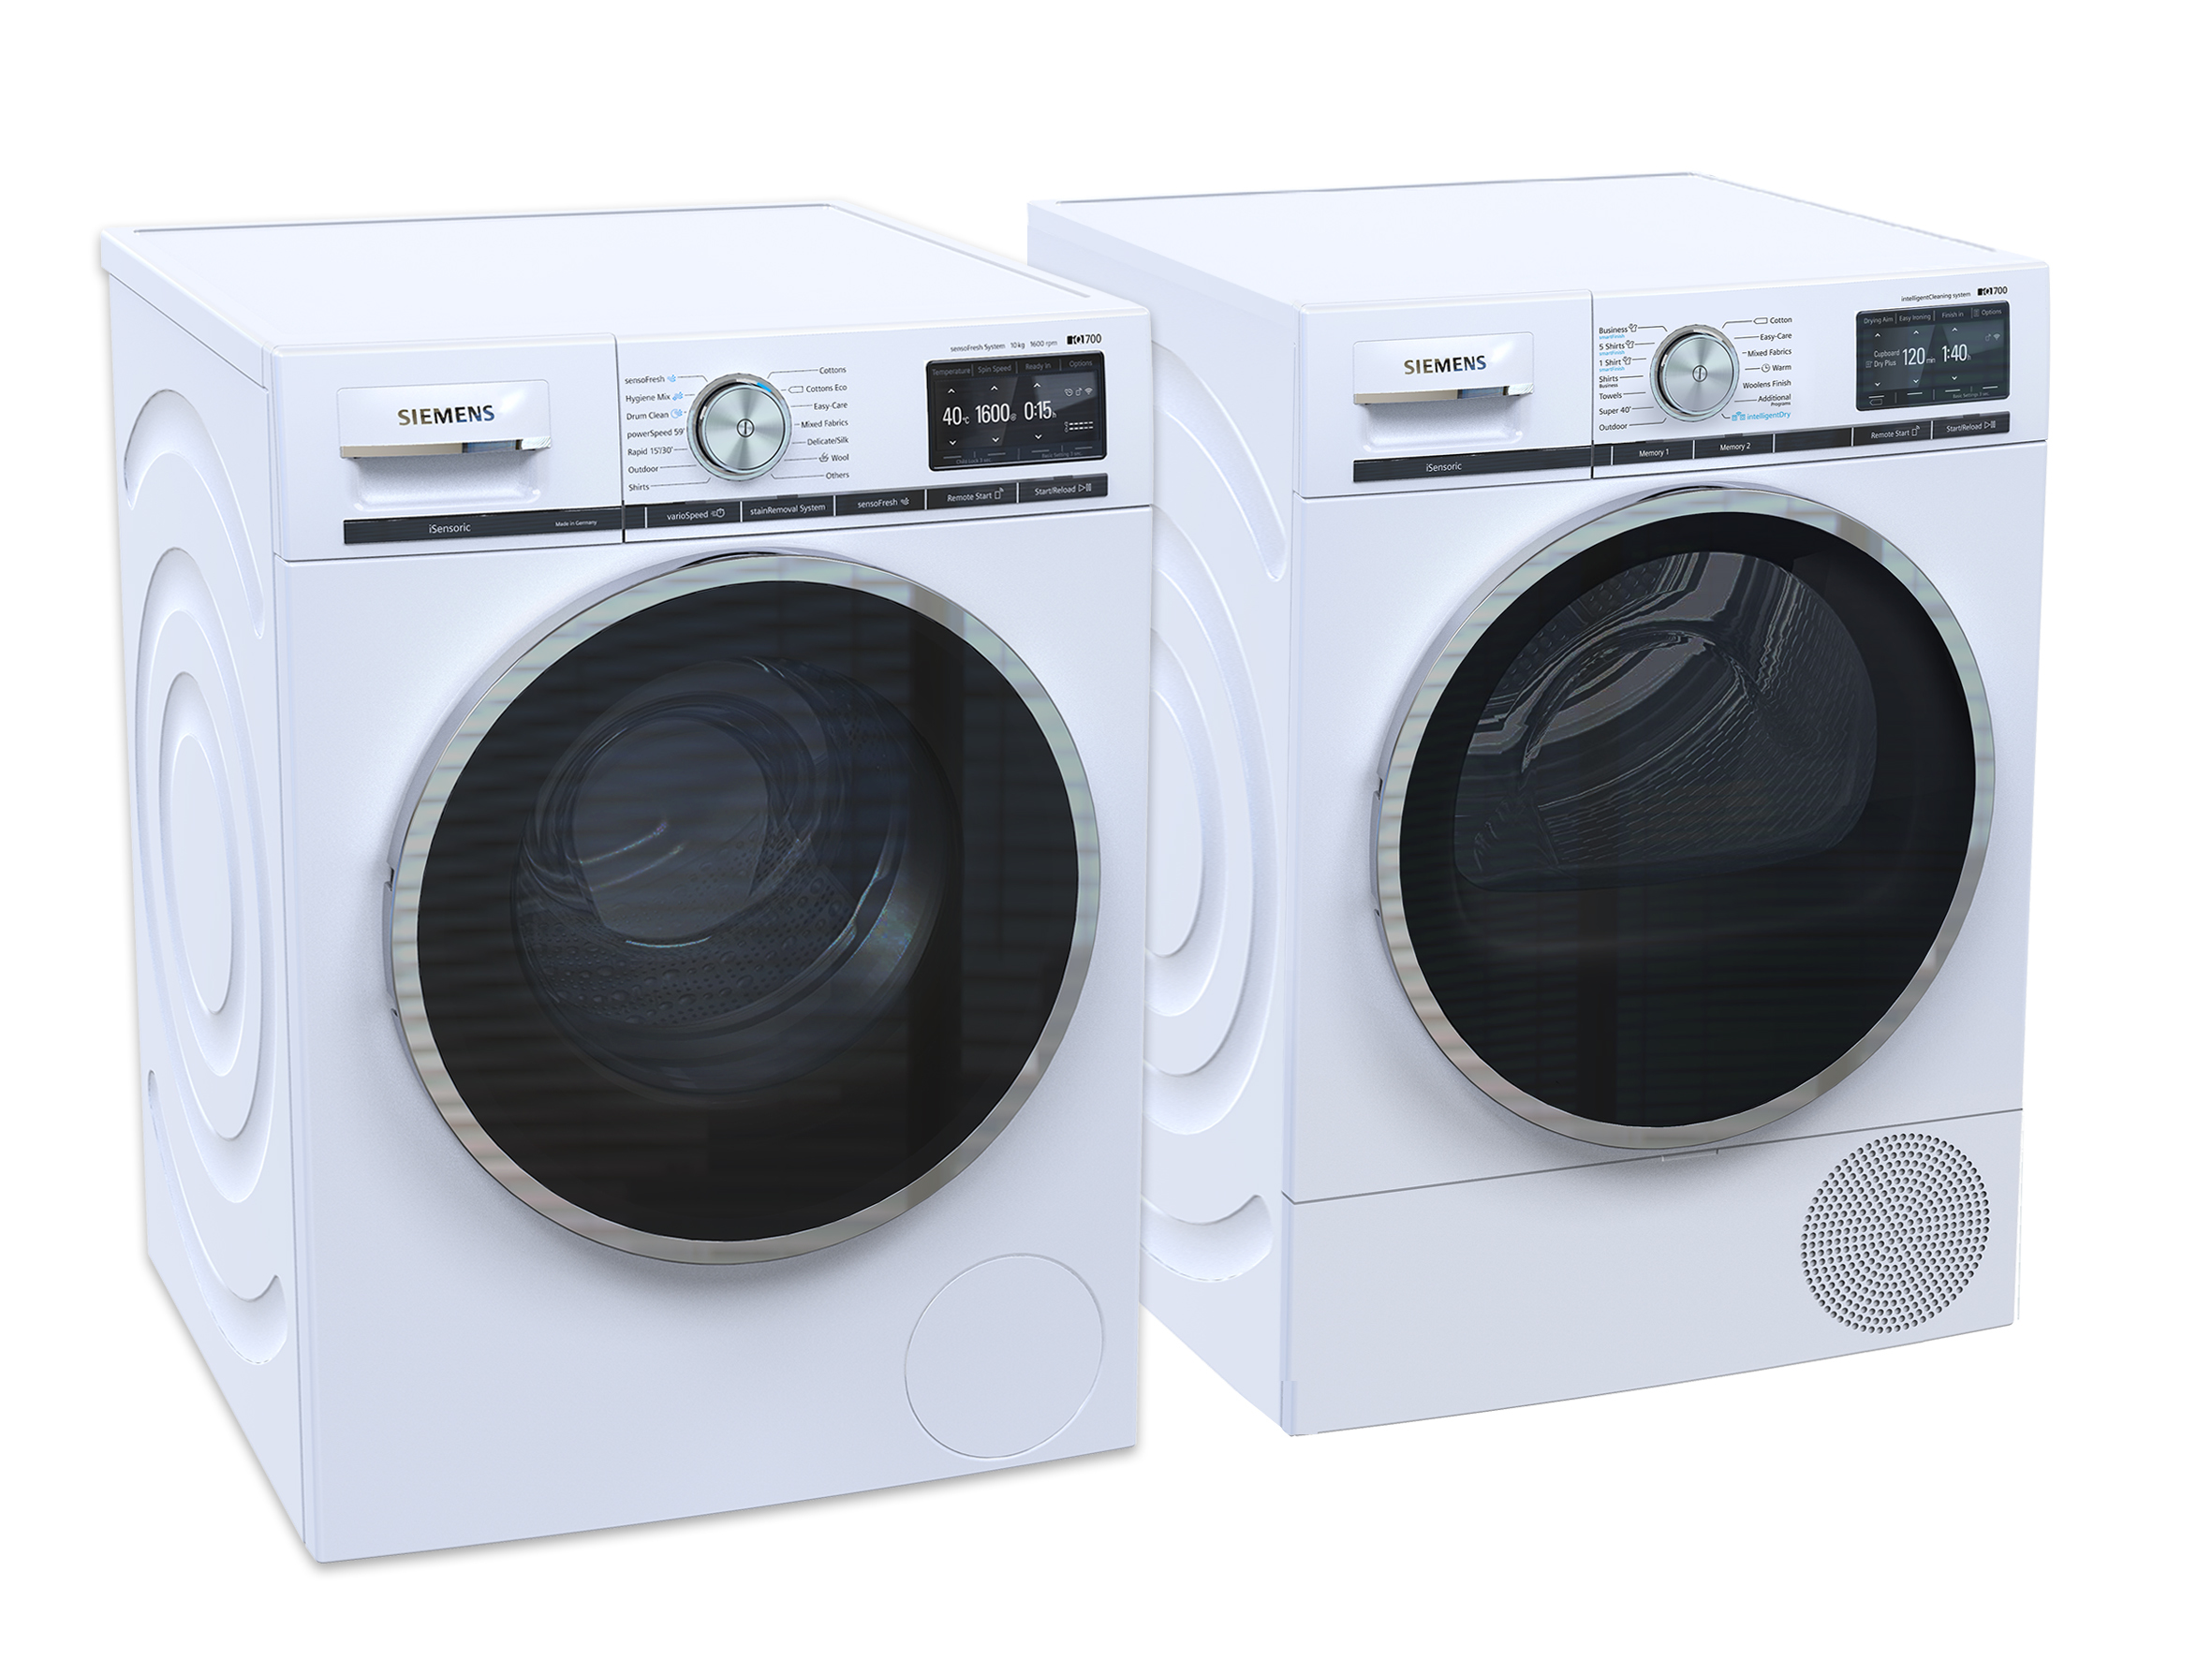 Siemens iQ800 washer & dryer